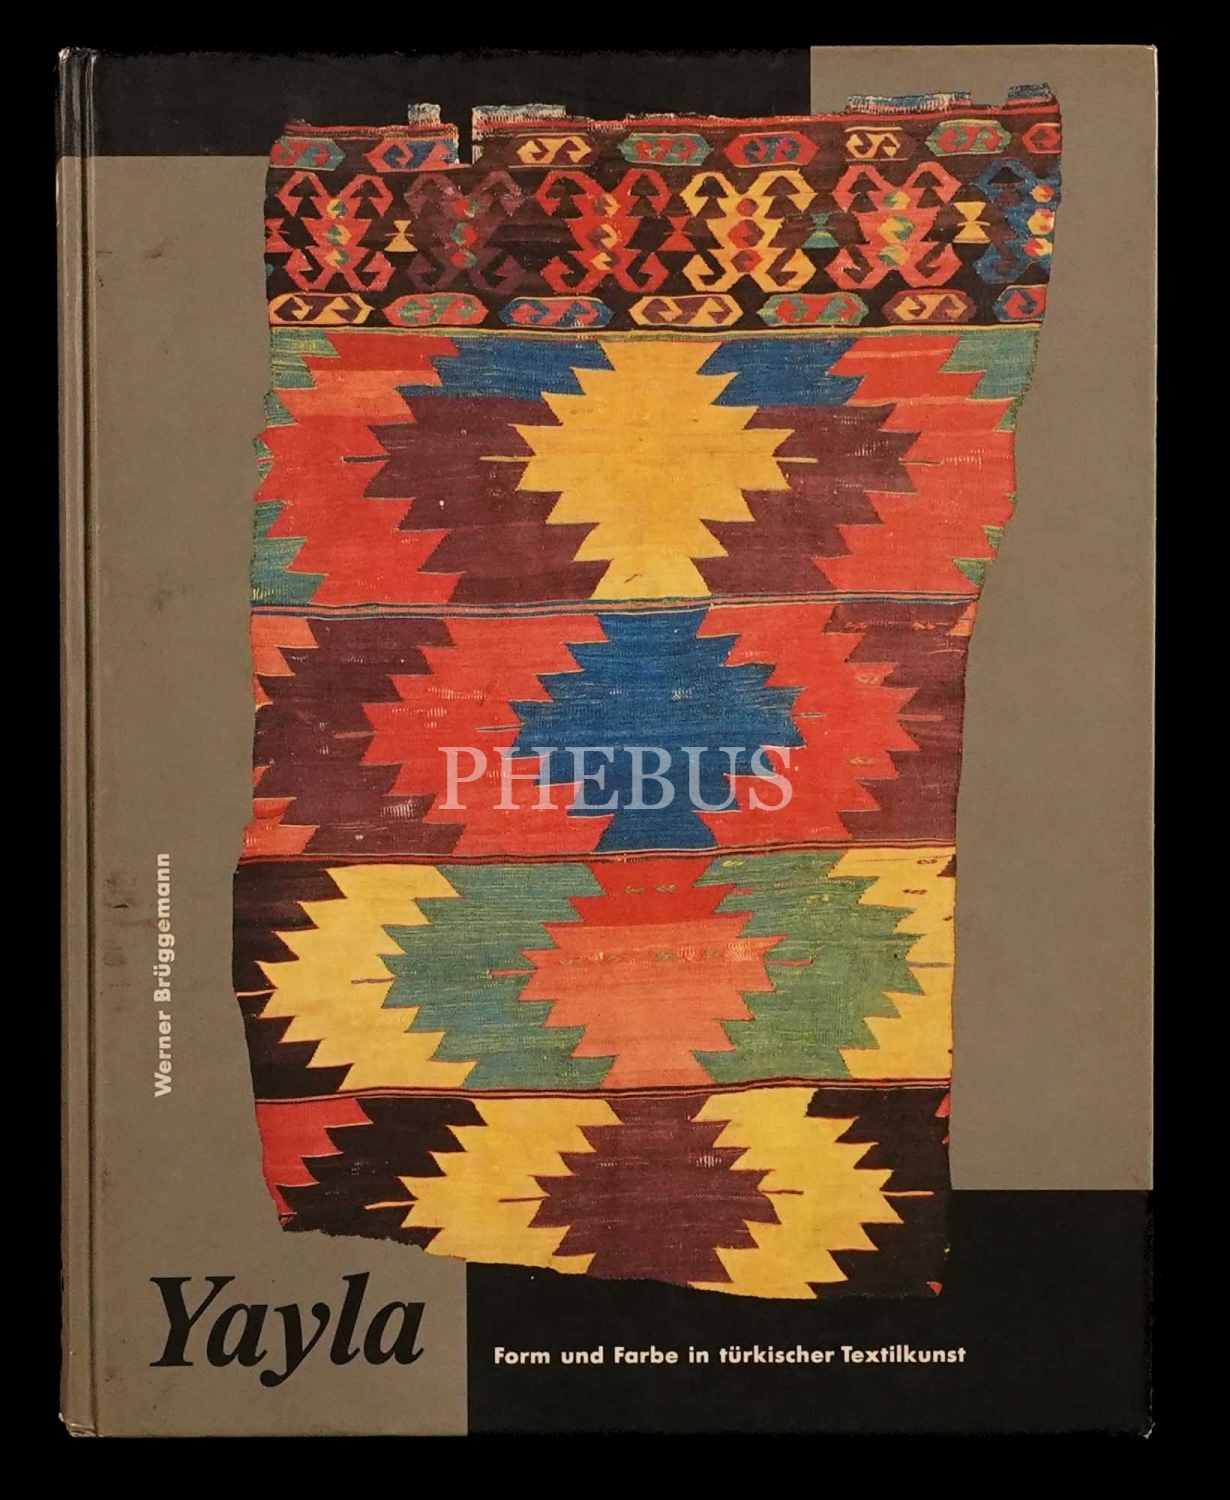 YAYLA (Form und Forbe in türkischer Textilkunst), Werner Brüggemann, 1993, Museum für Kunsthandwerk, 427 sayfa, 25x30 cm...